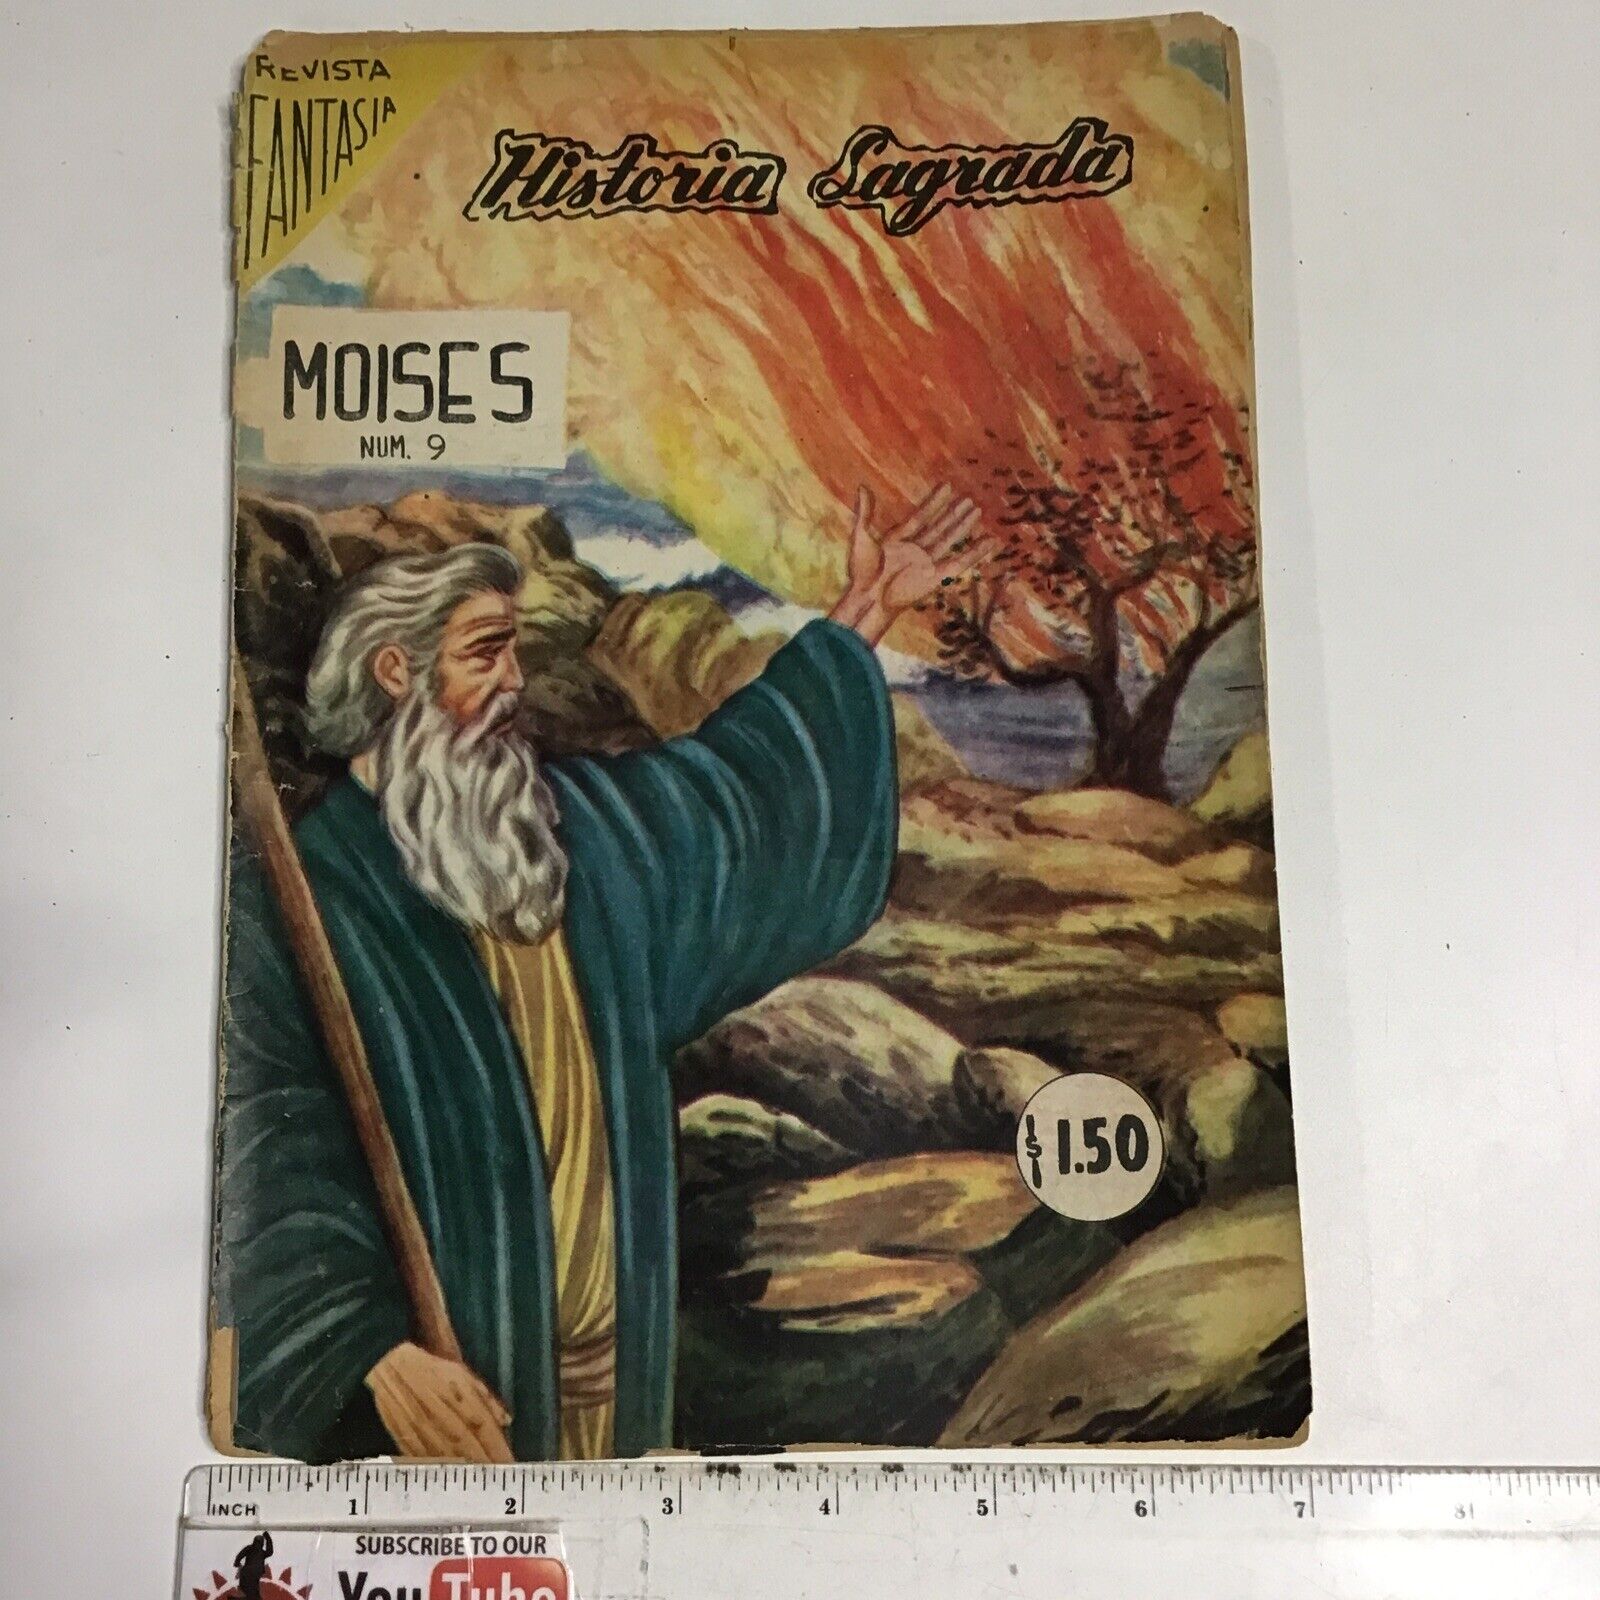 1963 SPANISH MEXICAN COMICS HISTORIA SAGRADA #9 MOISES EDITORA ROBERT MEXICO